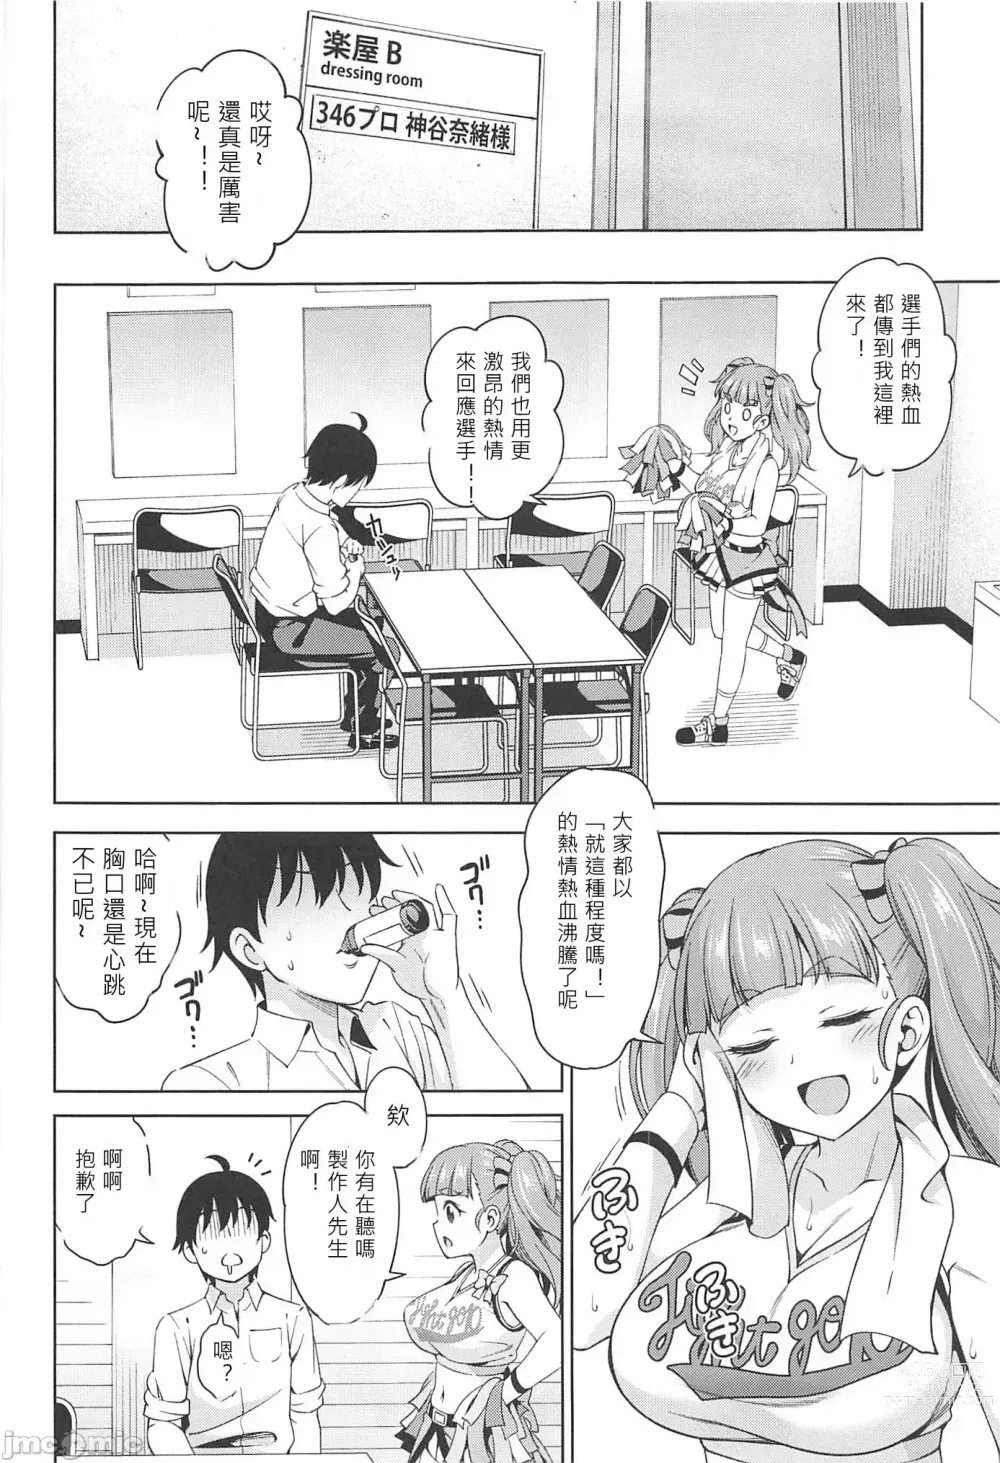 Page 3 of doujinshi Hitoribocchi no Yell